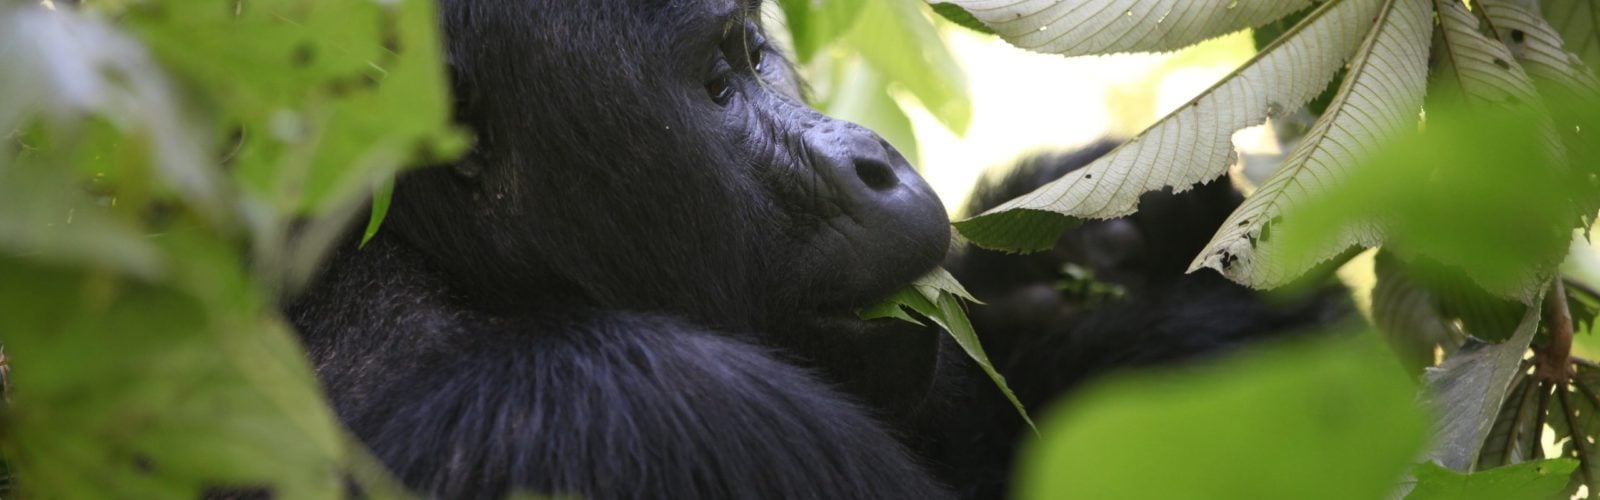 gorilla-tracking-uganda